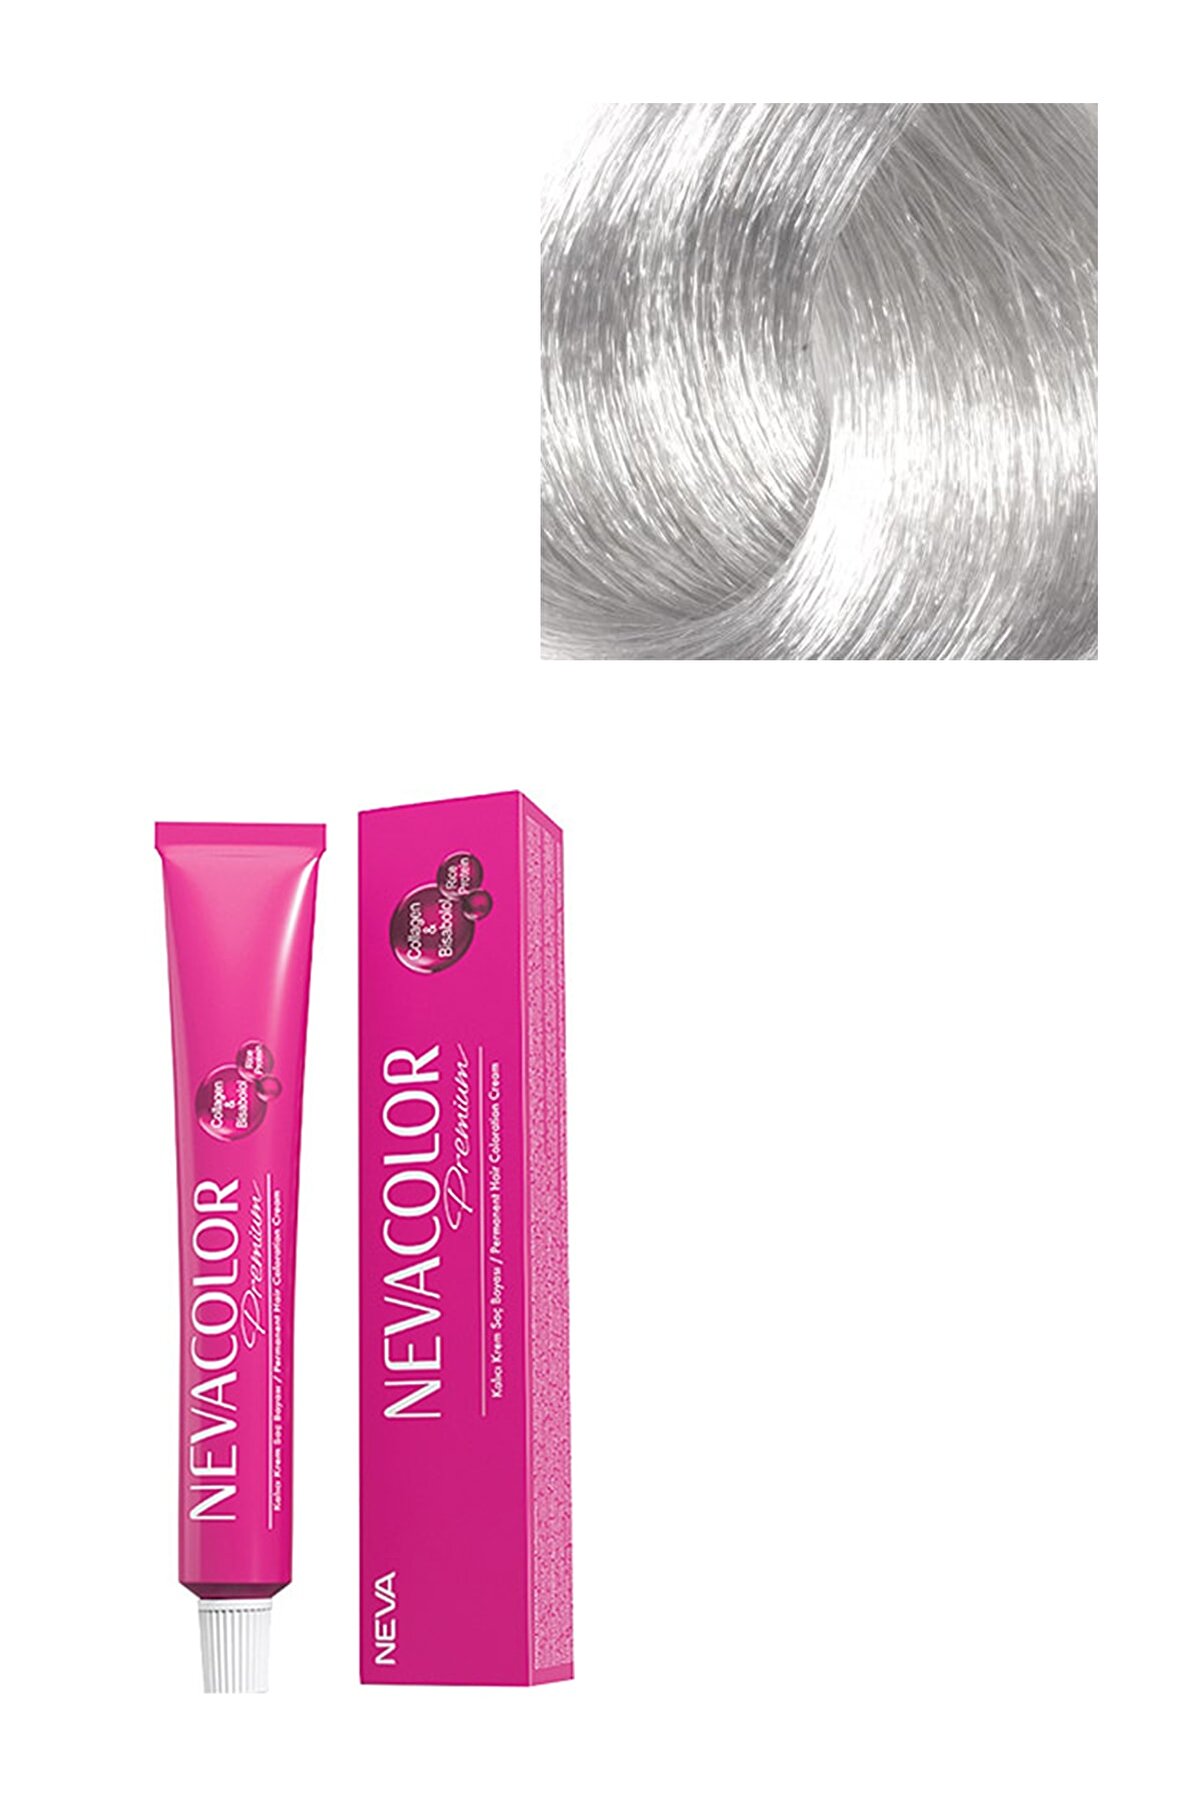 Neva Color Premium Kalıcı Saç Boyası 0.01 - Yoğun Gümüş Gri